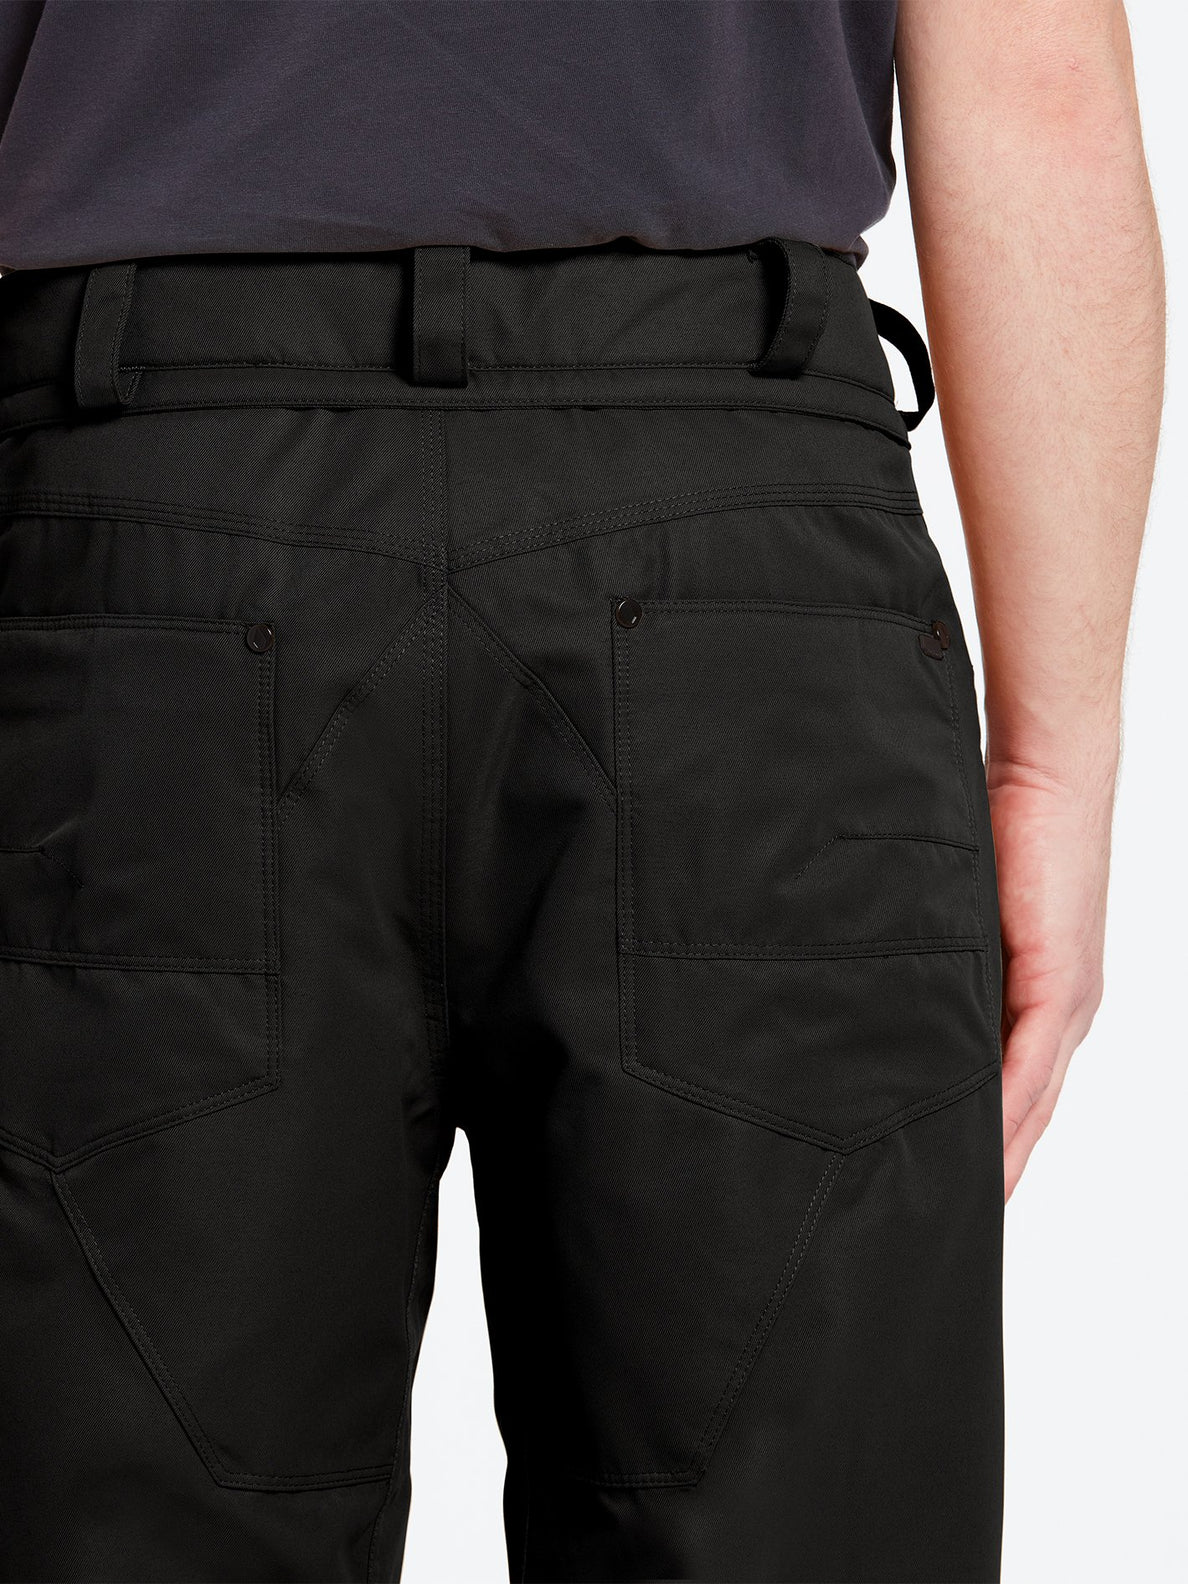 Carbon Trousers - BLACK (G1352112_BLK) [12]